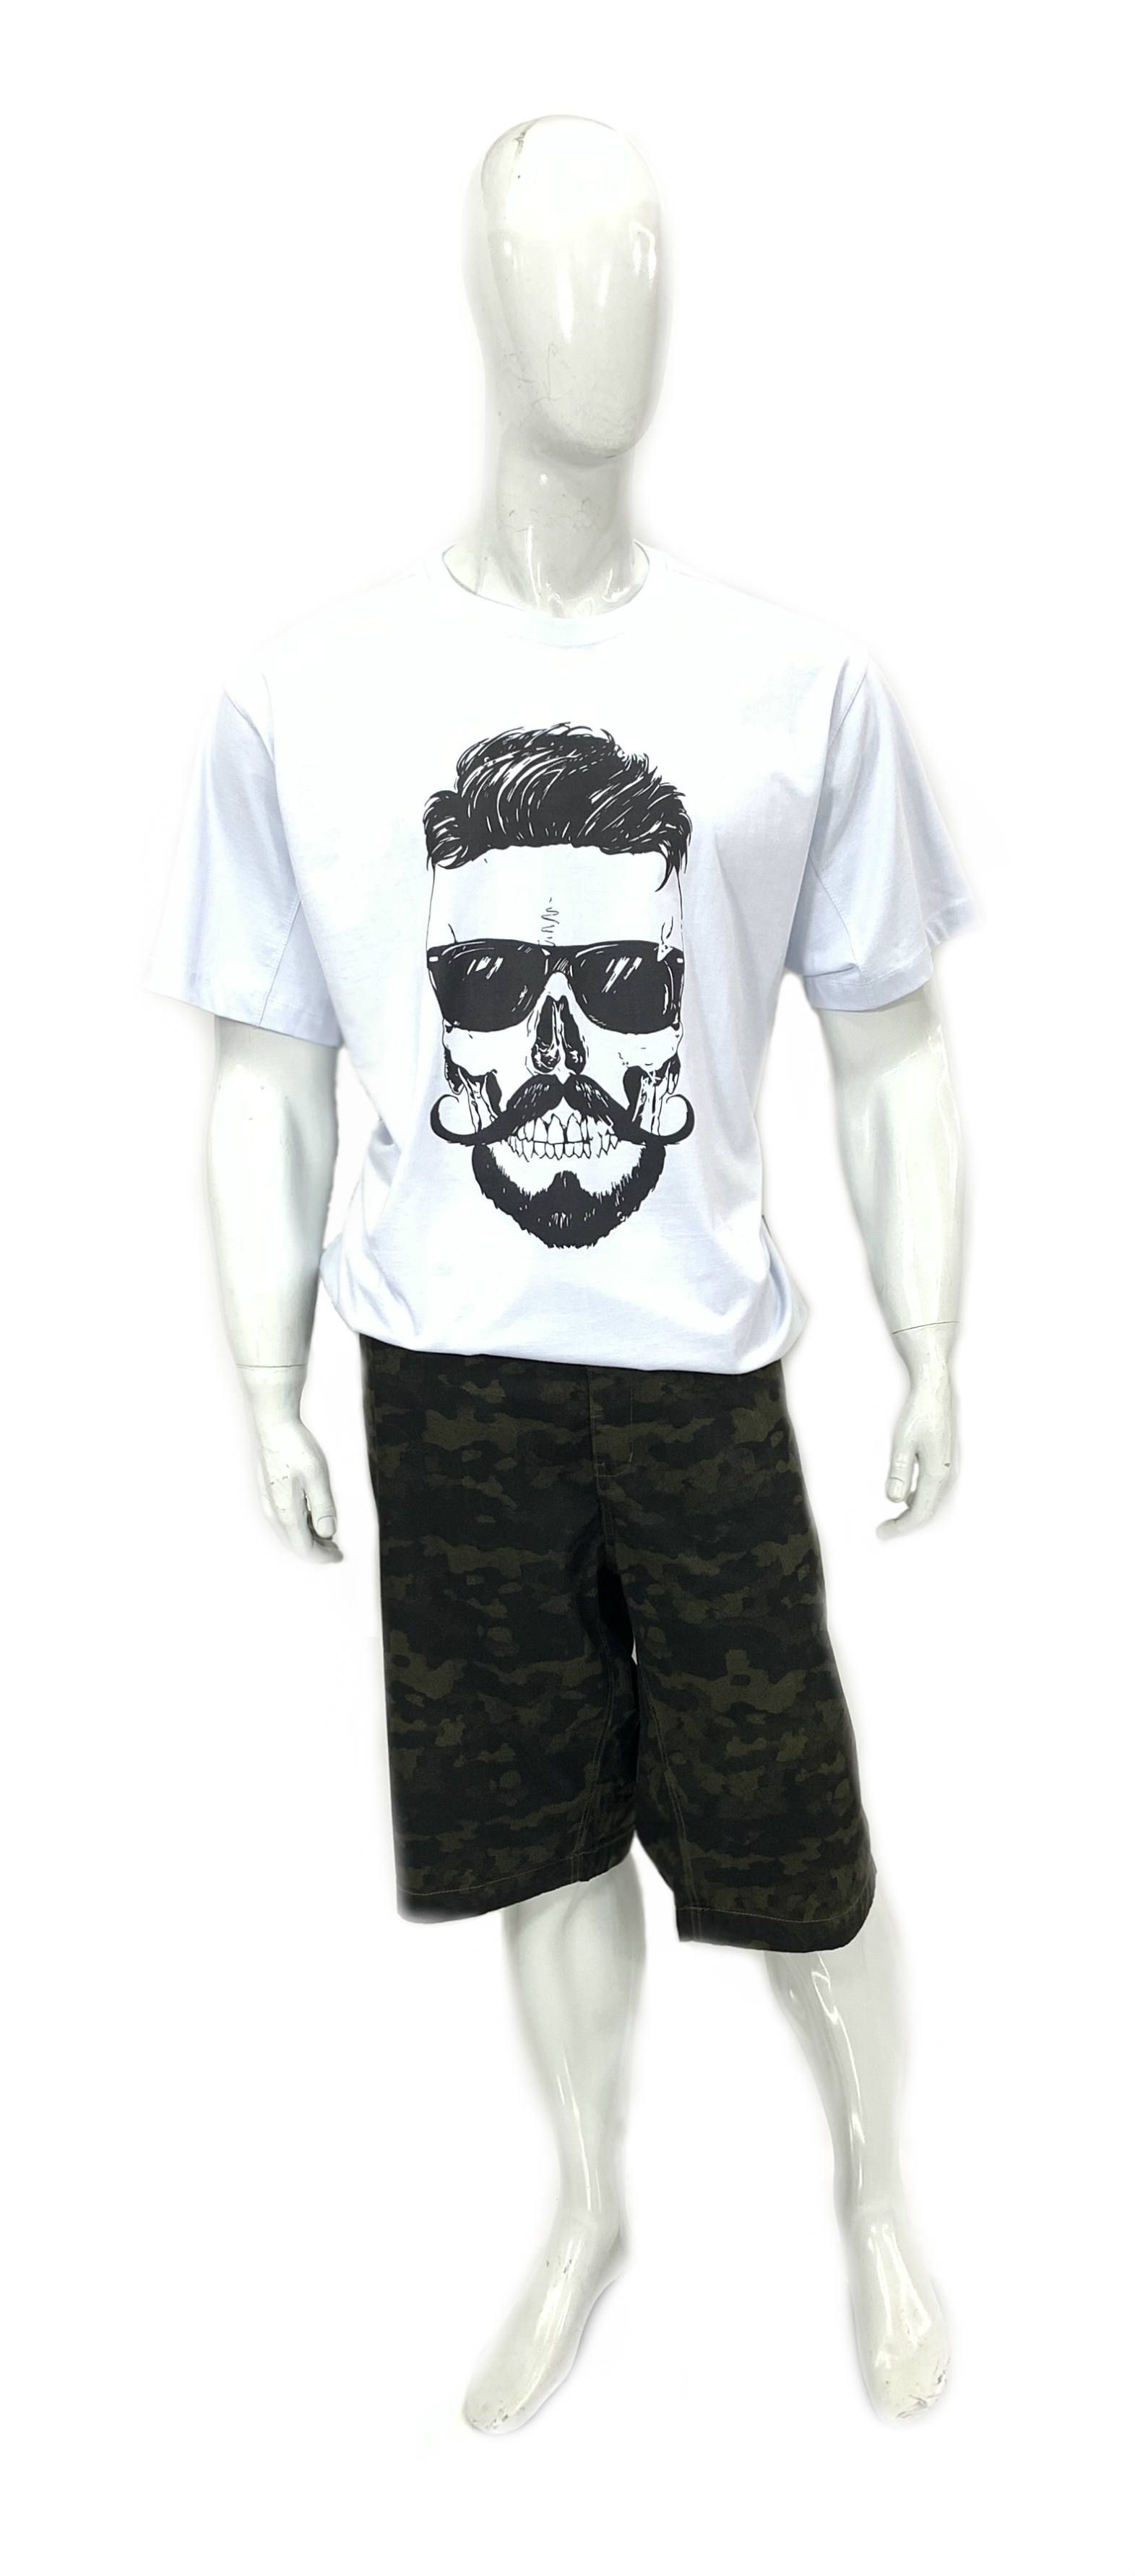 Camiseta Plus Size Ref 08888 / Bermuda Plus Size Ref 08887